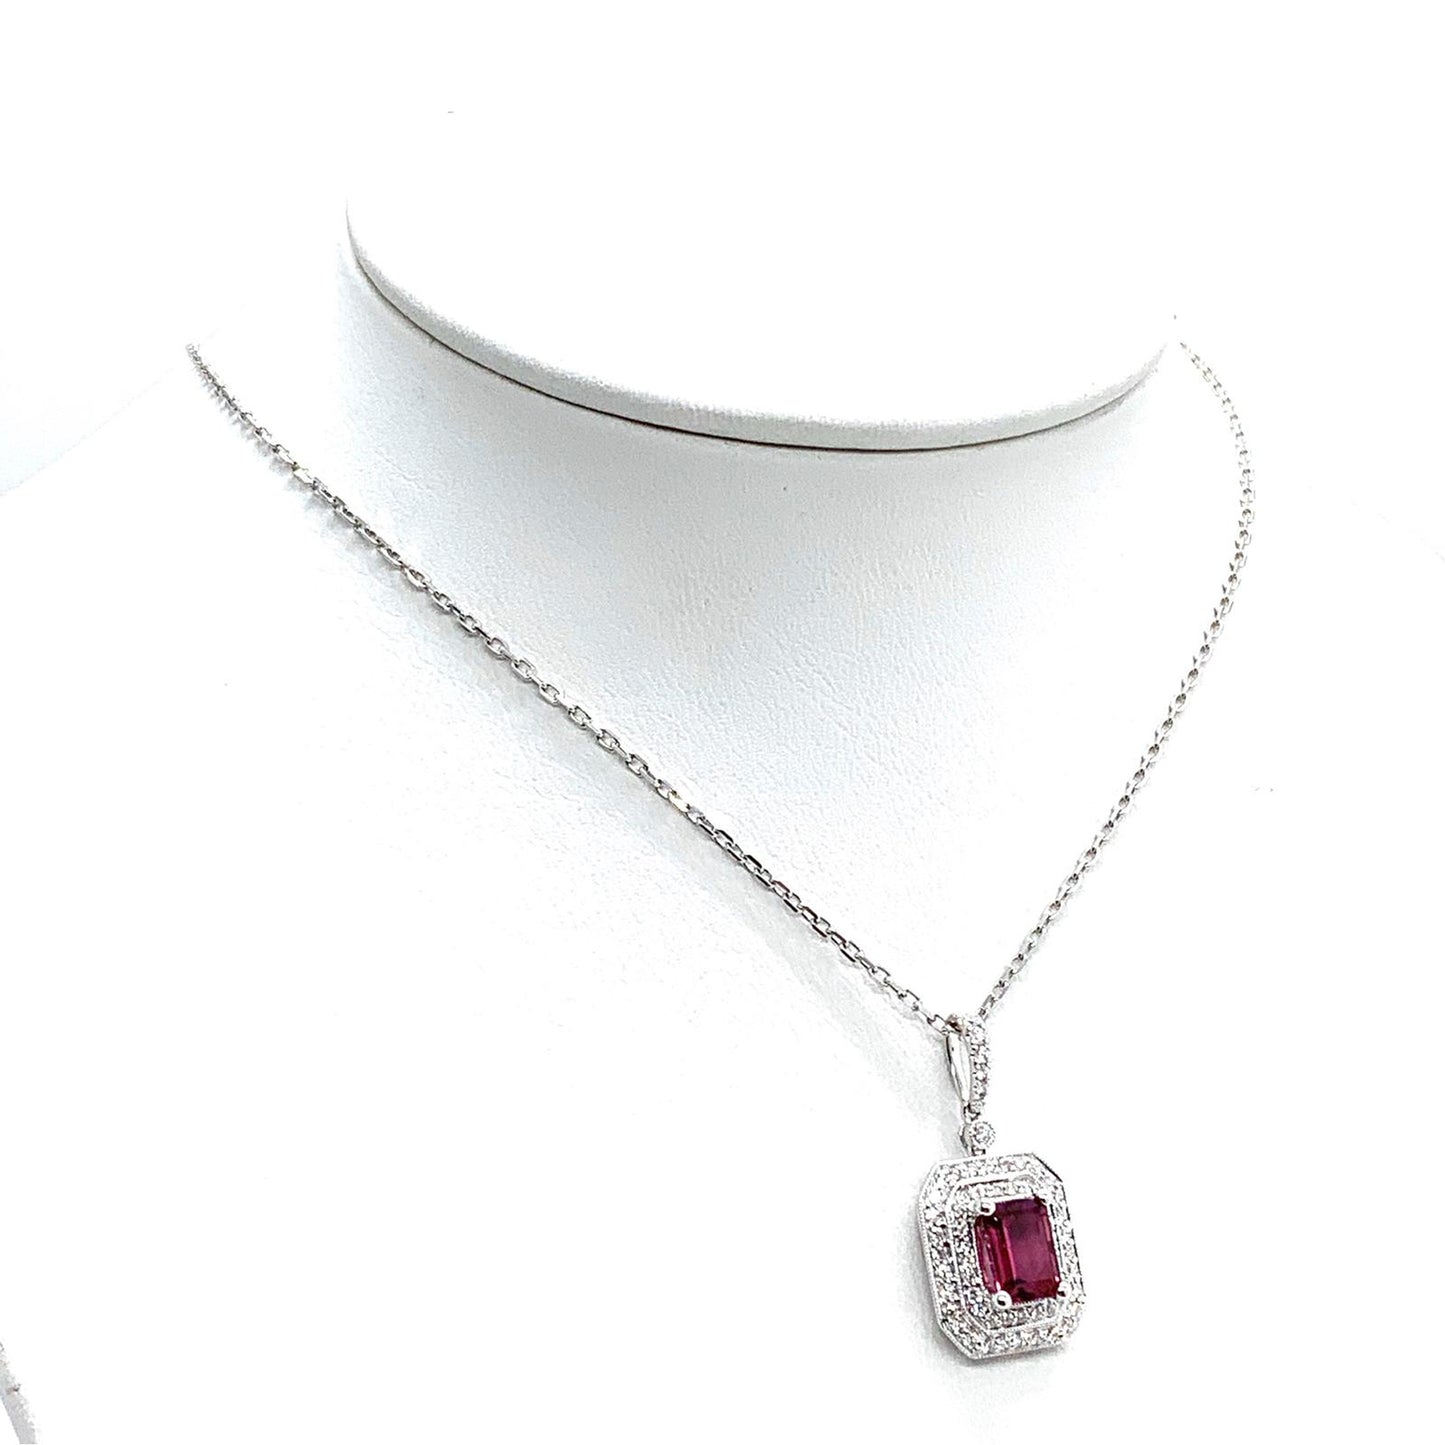 Diamond Rubellite Tourmaline Necklace 18" 18k Gold 1.80 TCW Certified $4,950 921140 - Certified Fine Jewelry